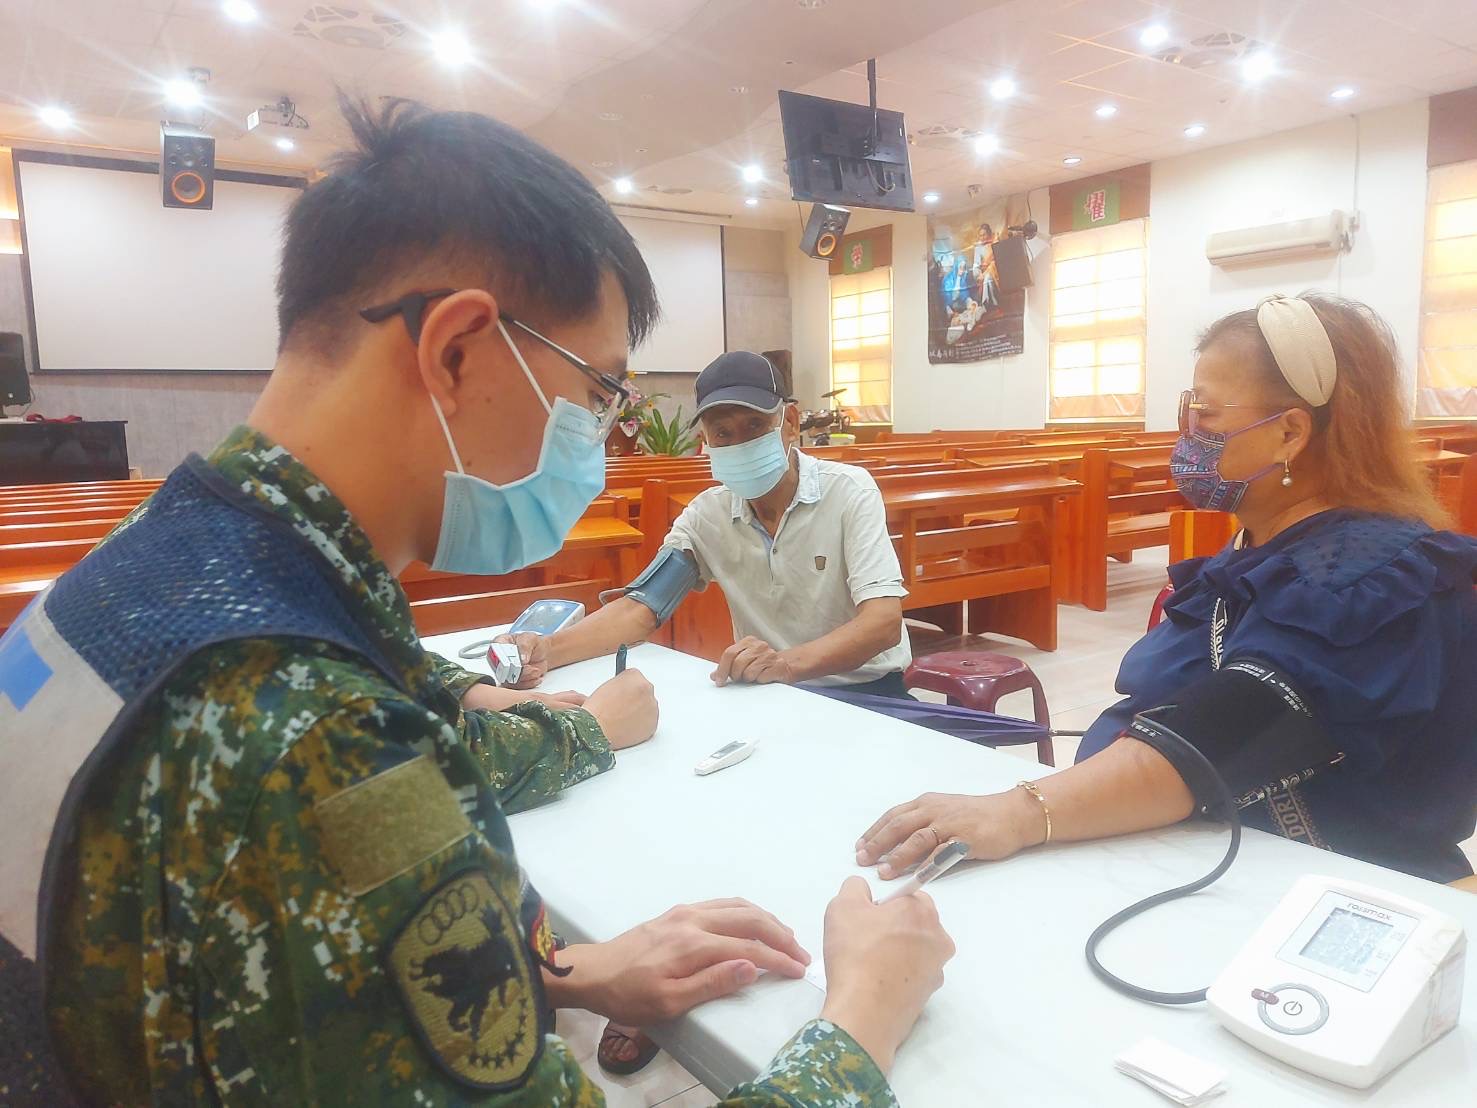 由具EMT1救護員資格的士兵幫村民量測血壓。